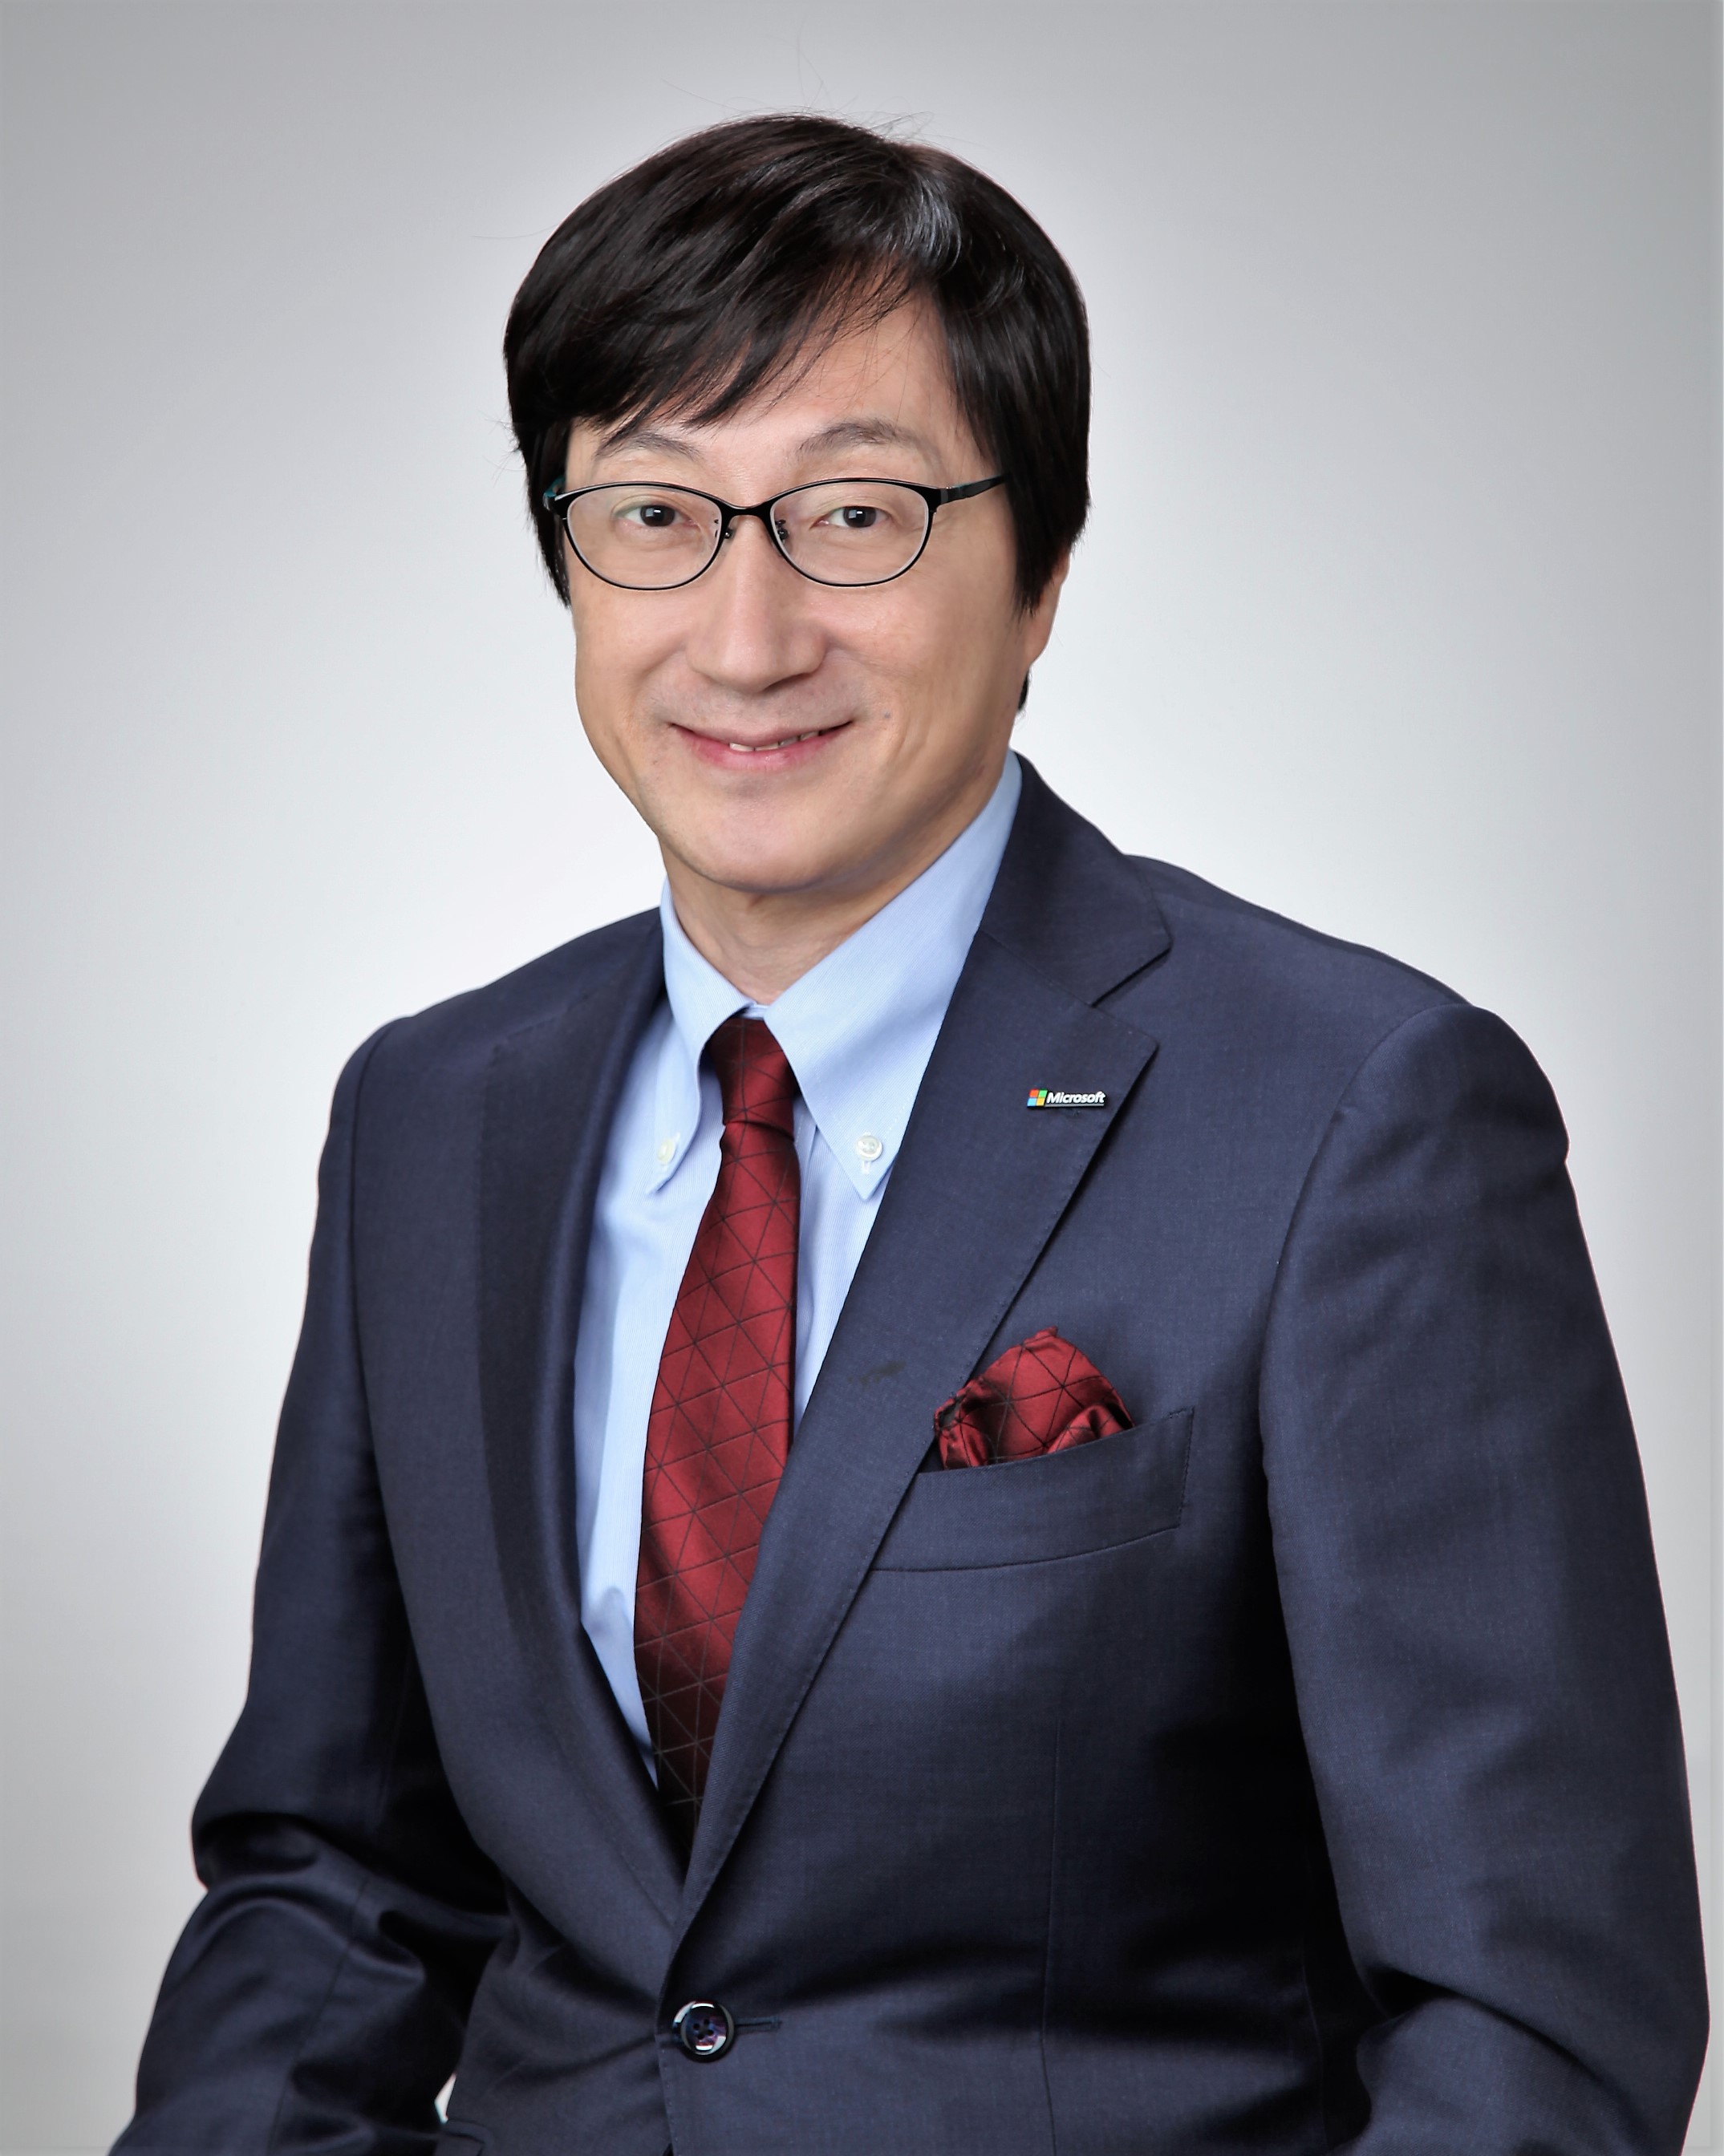 Hitoshi Yoshida, President of Microsoft Japan.